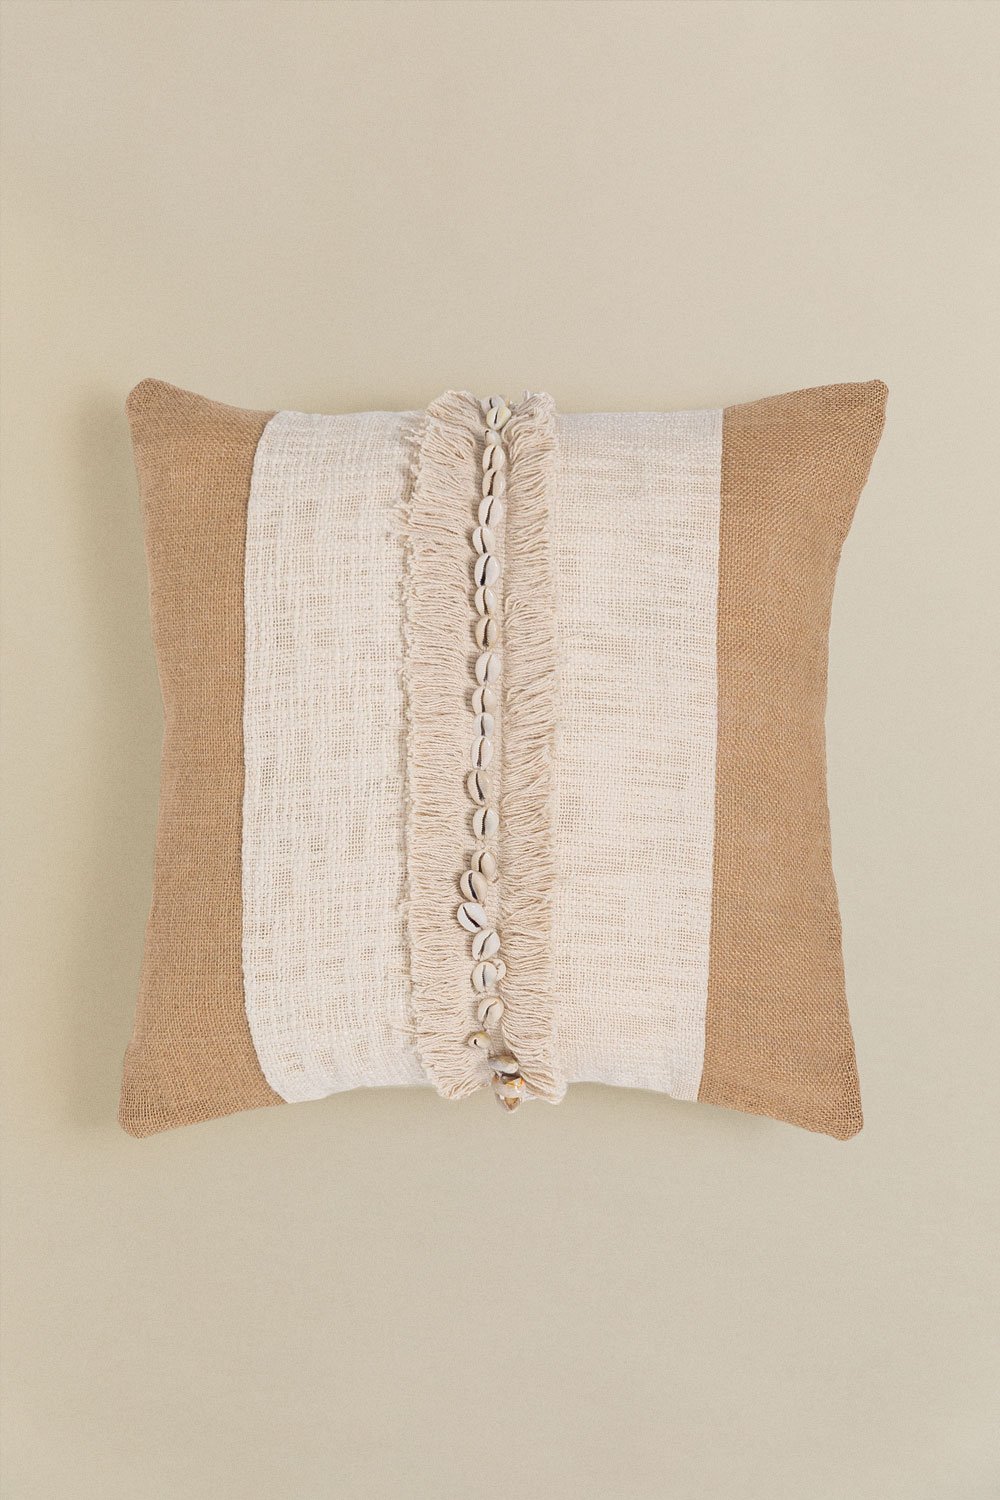 Kwadratowa poduszka z bawełny i juty (45x45 cm) Naiba, obrazek w galerii 1